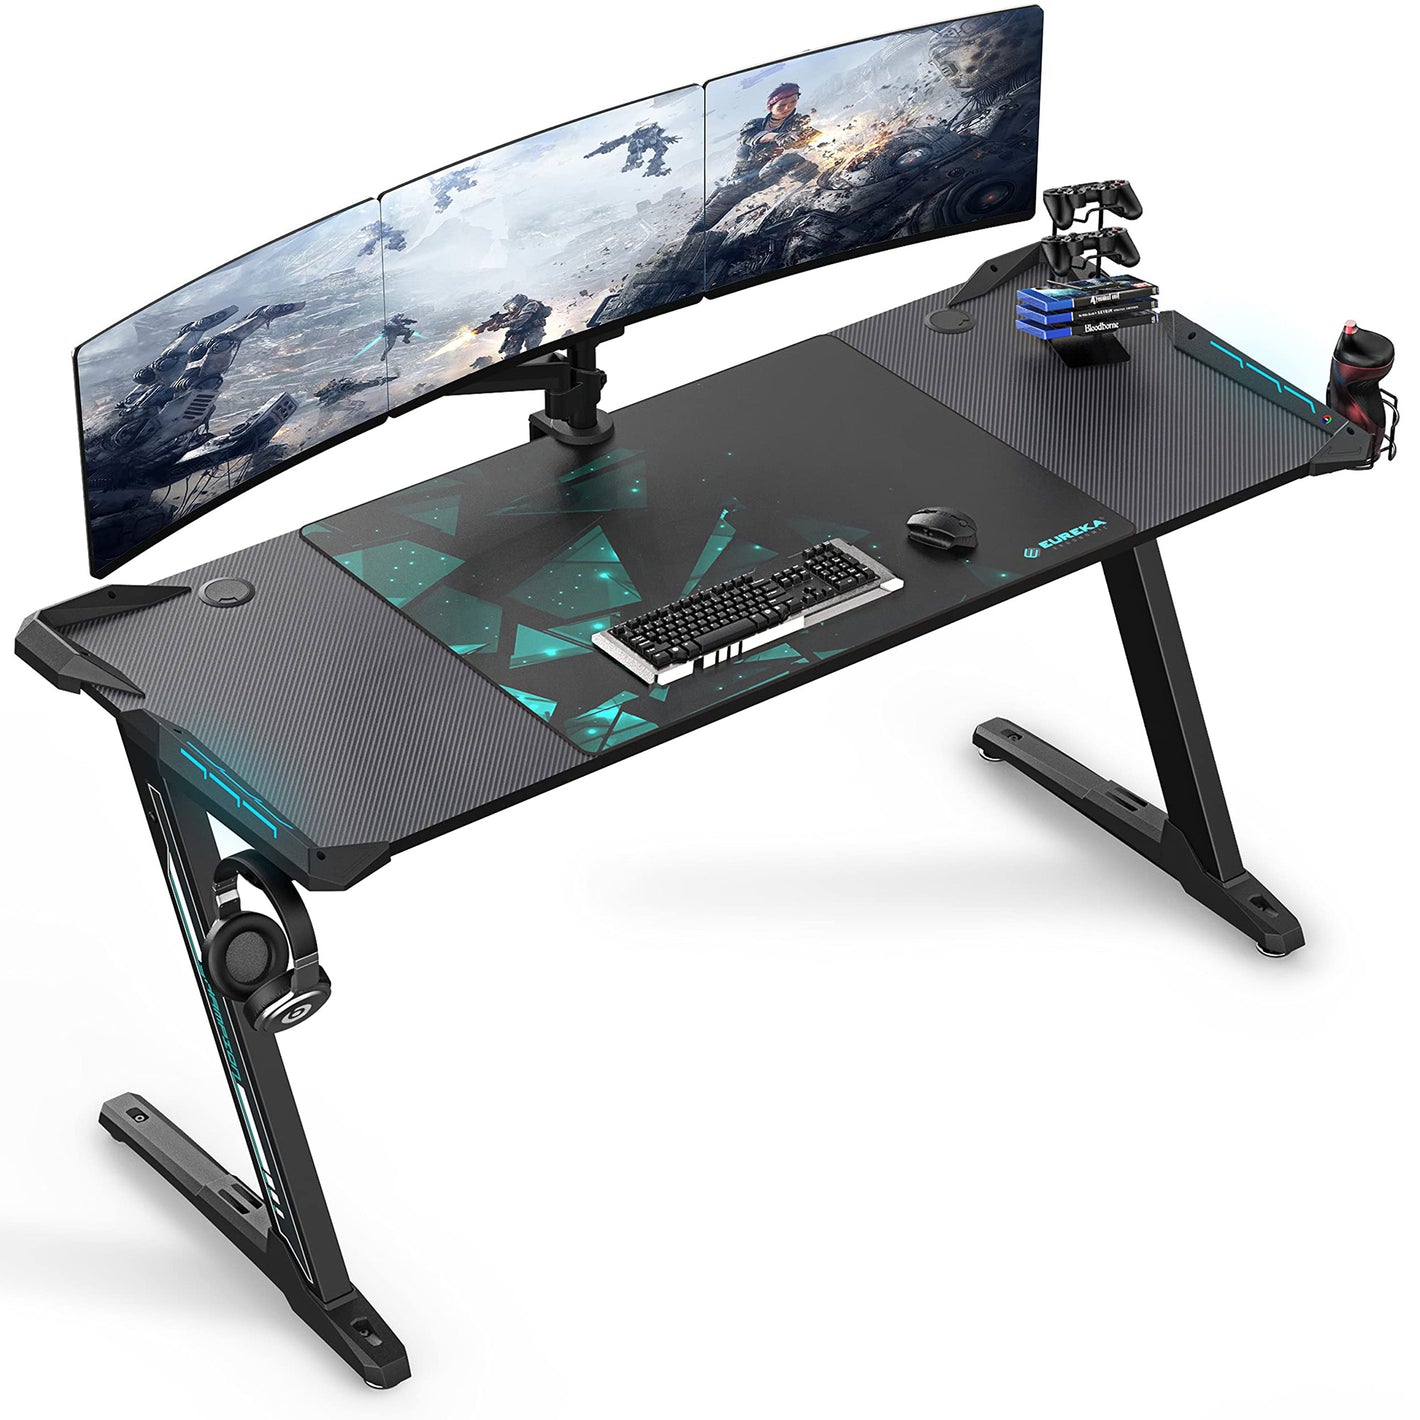 60" Z-shaped Black Gaming Desk, Black-colored